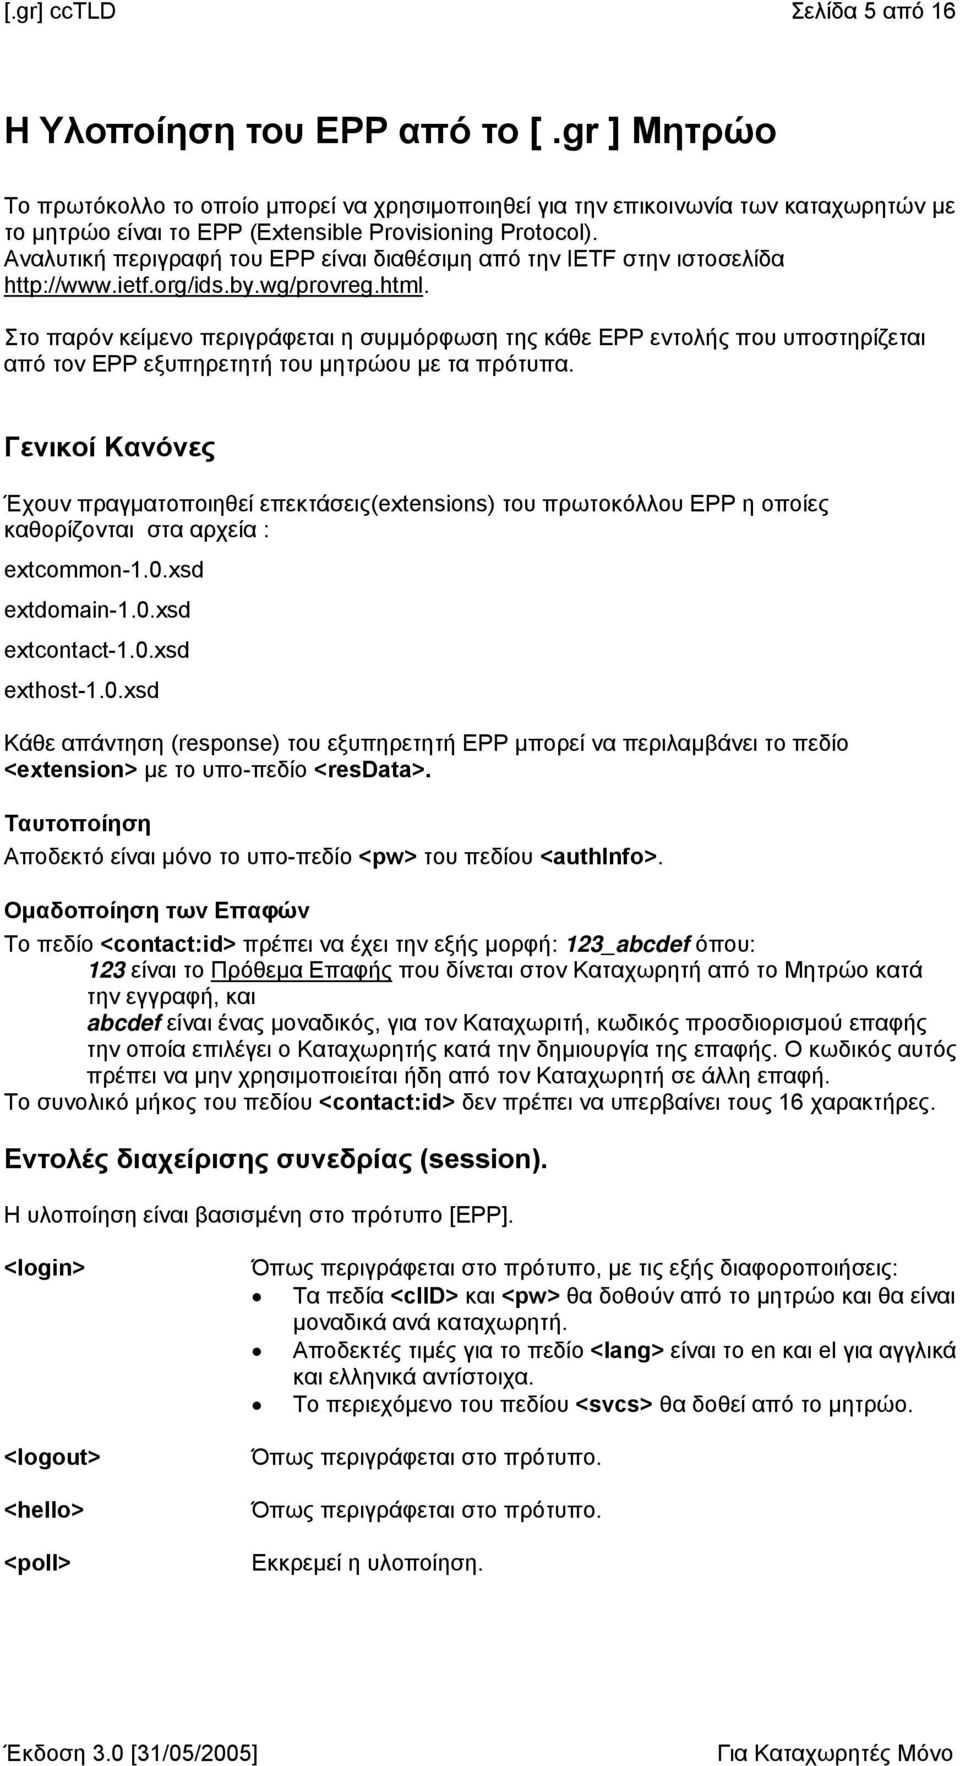 Αναλυτική περιγραφή του EPP είναι διαθέσιµη από την IETF στην ιστοσελίδα http://www.ietf.org/ids.by.wg/provreg.html.